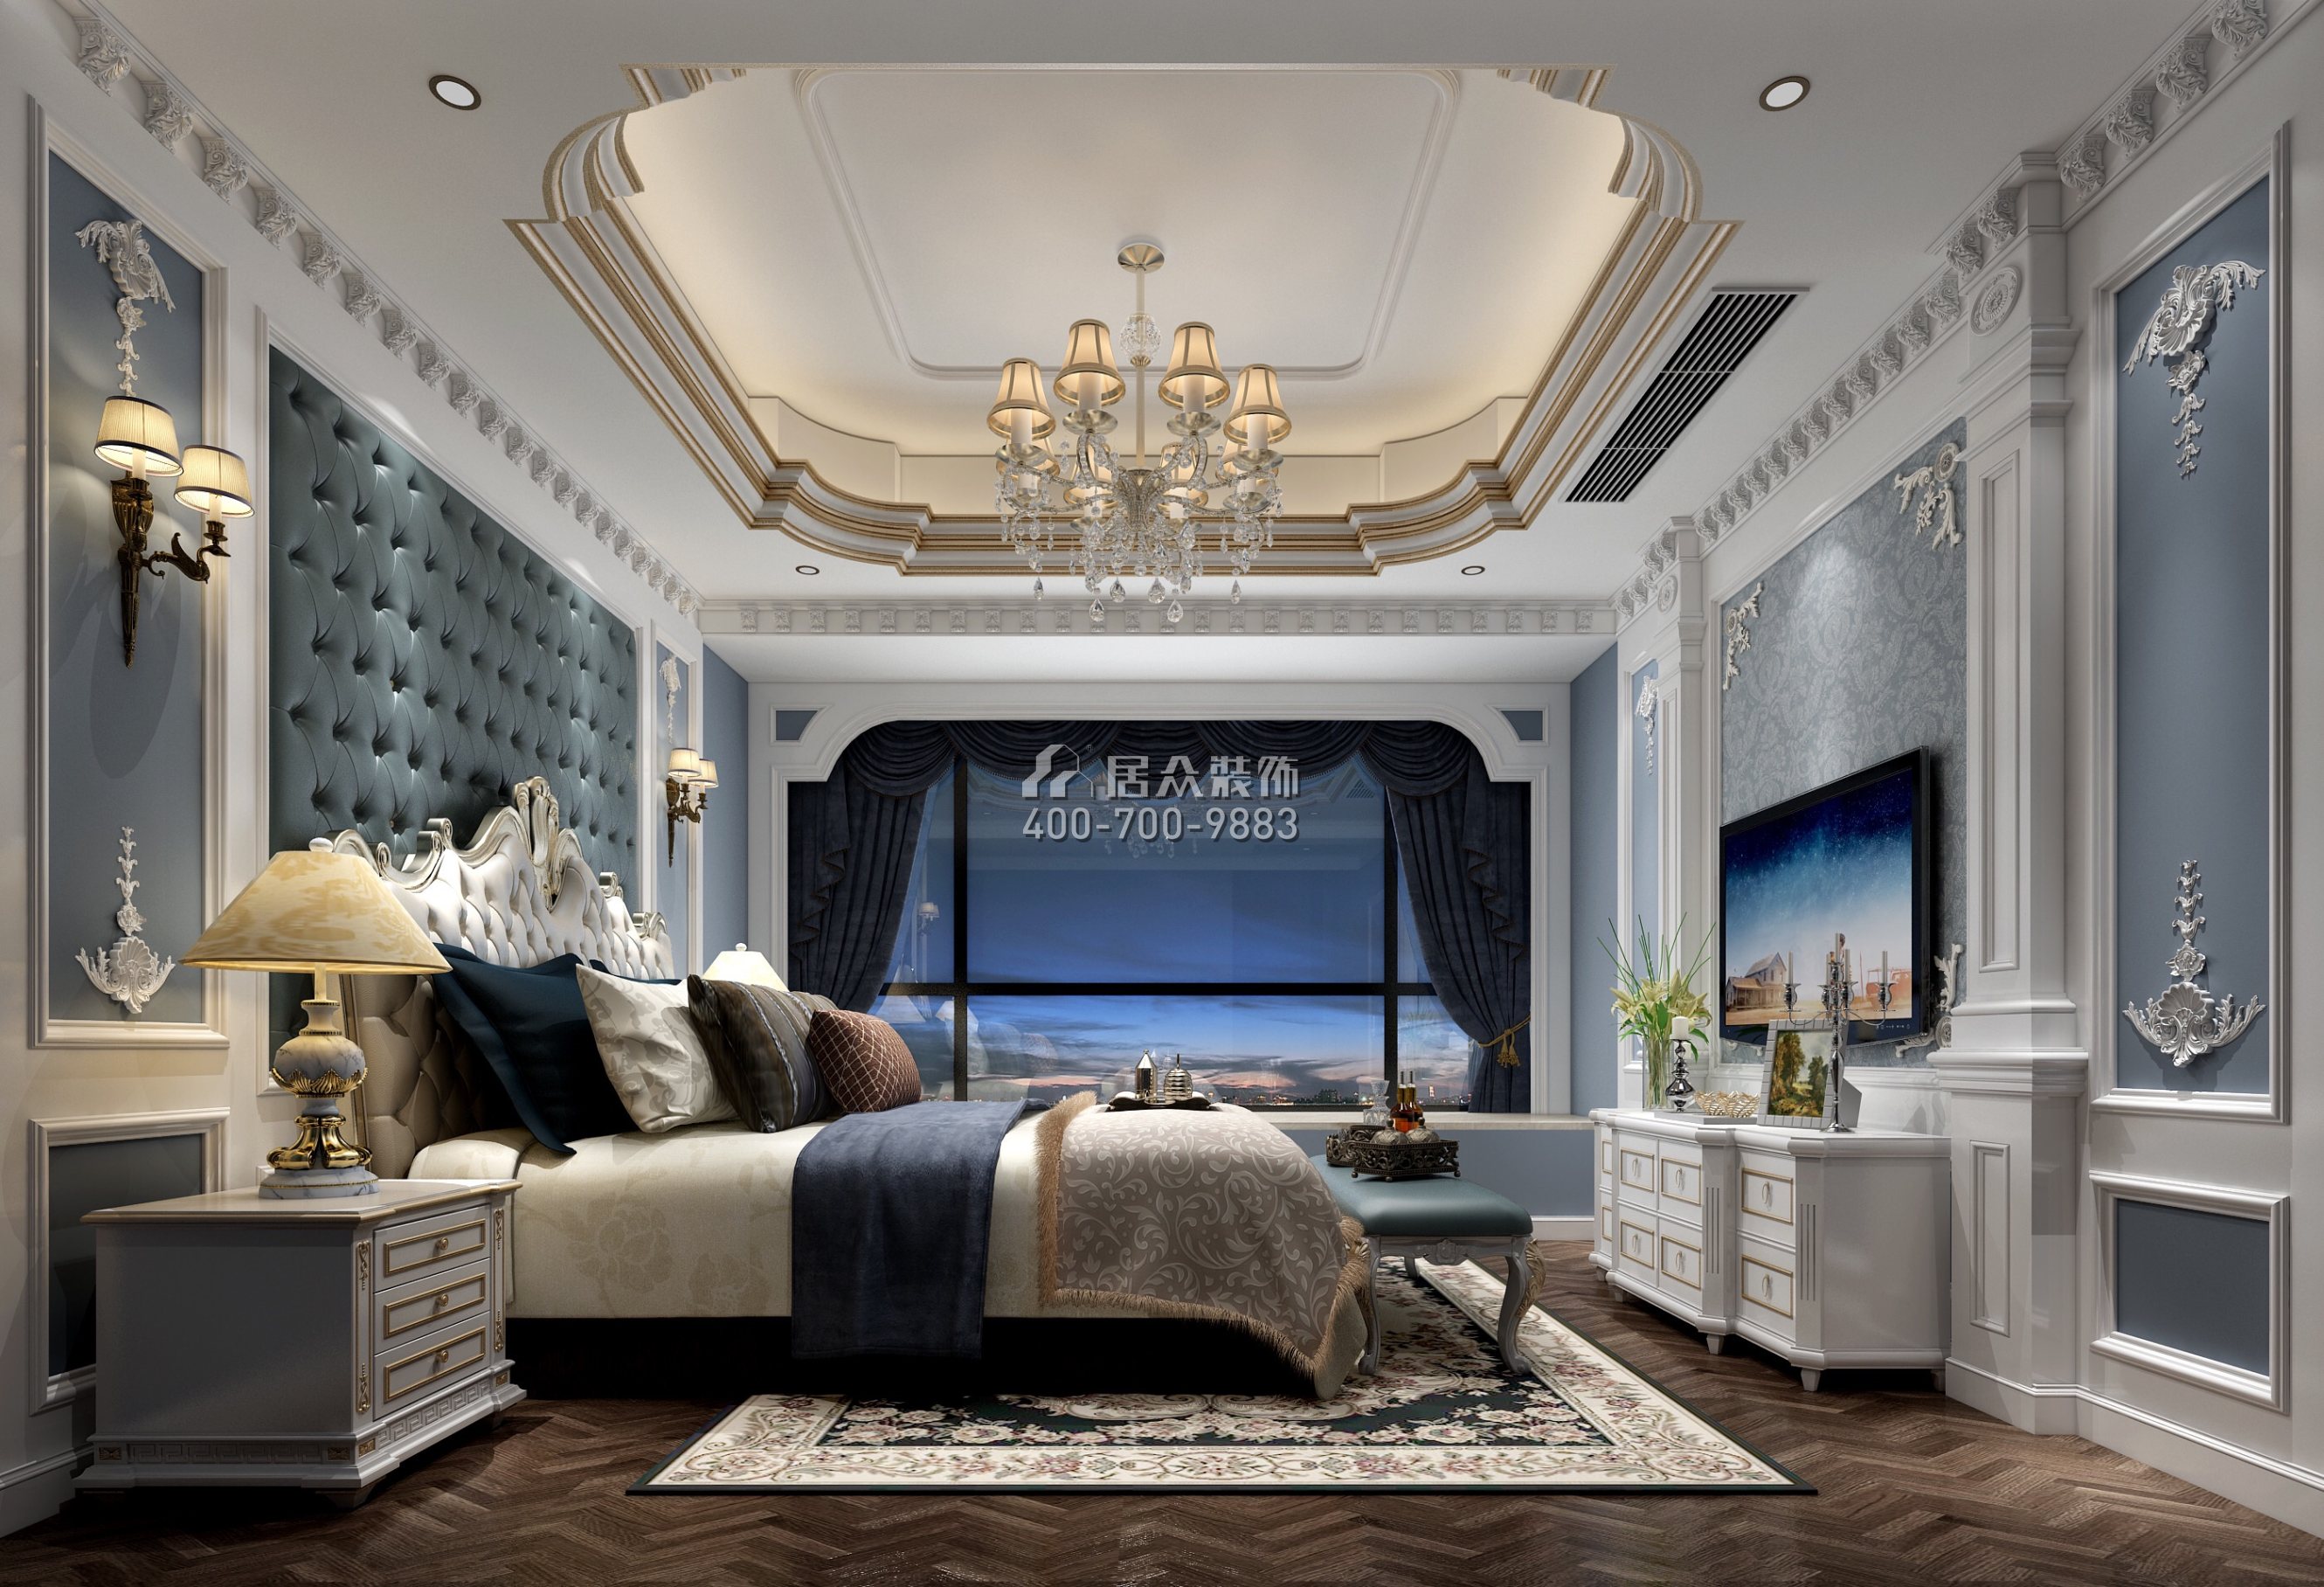 仁山智水花园一期200平方米欧式风格平层户型卧室装修效果图